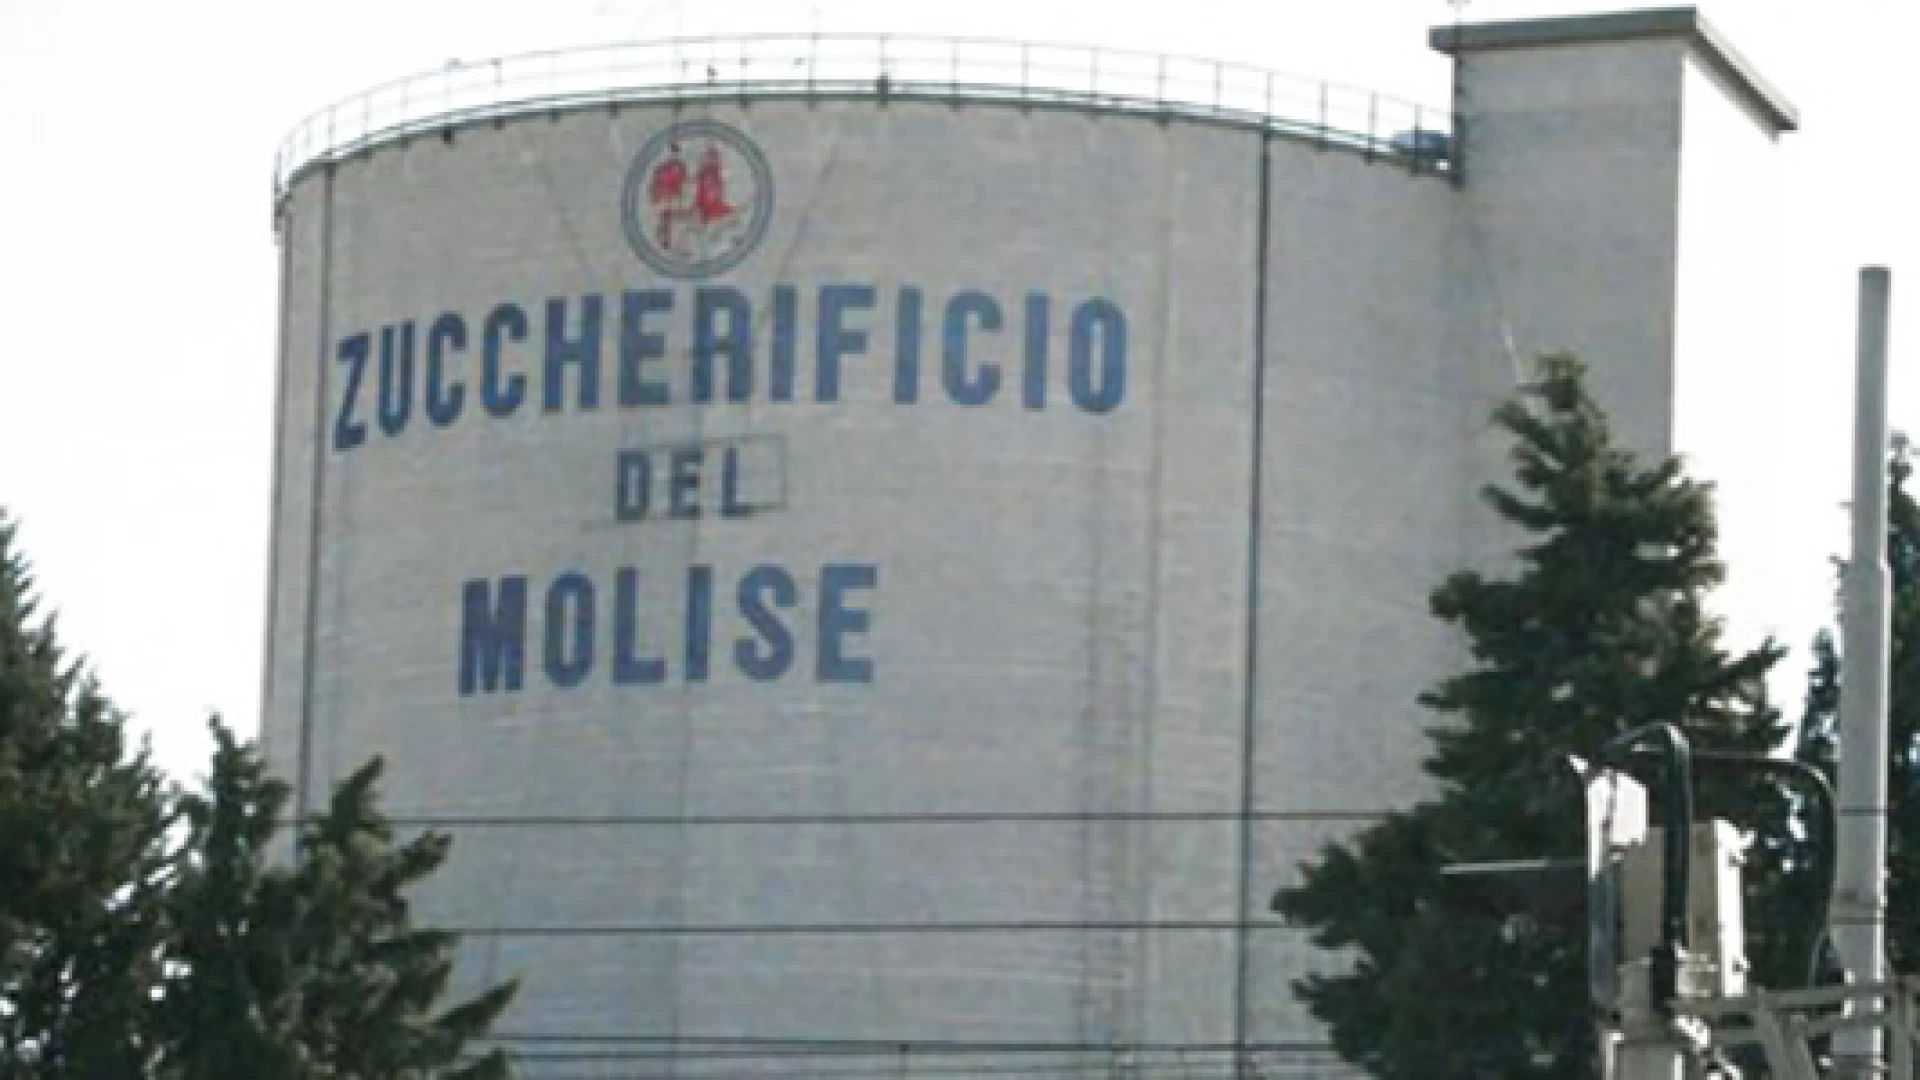 La lunga storia dello Zuccherificio del Molise continua, anche dopo la chiusura avvenuta nel dicembre 2016. “Al declino non c’è mai una fine”.